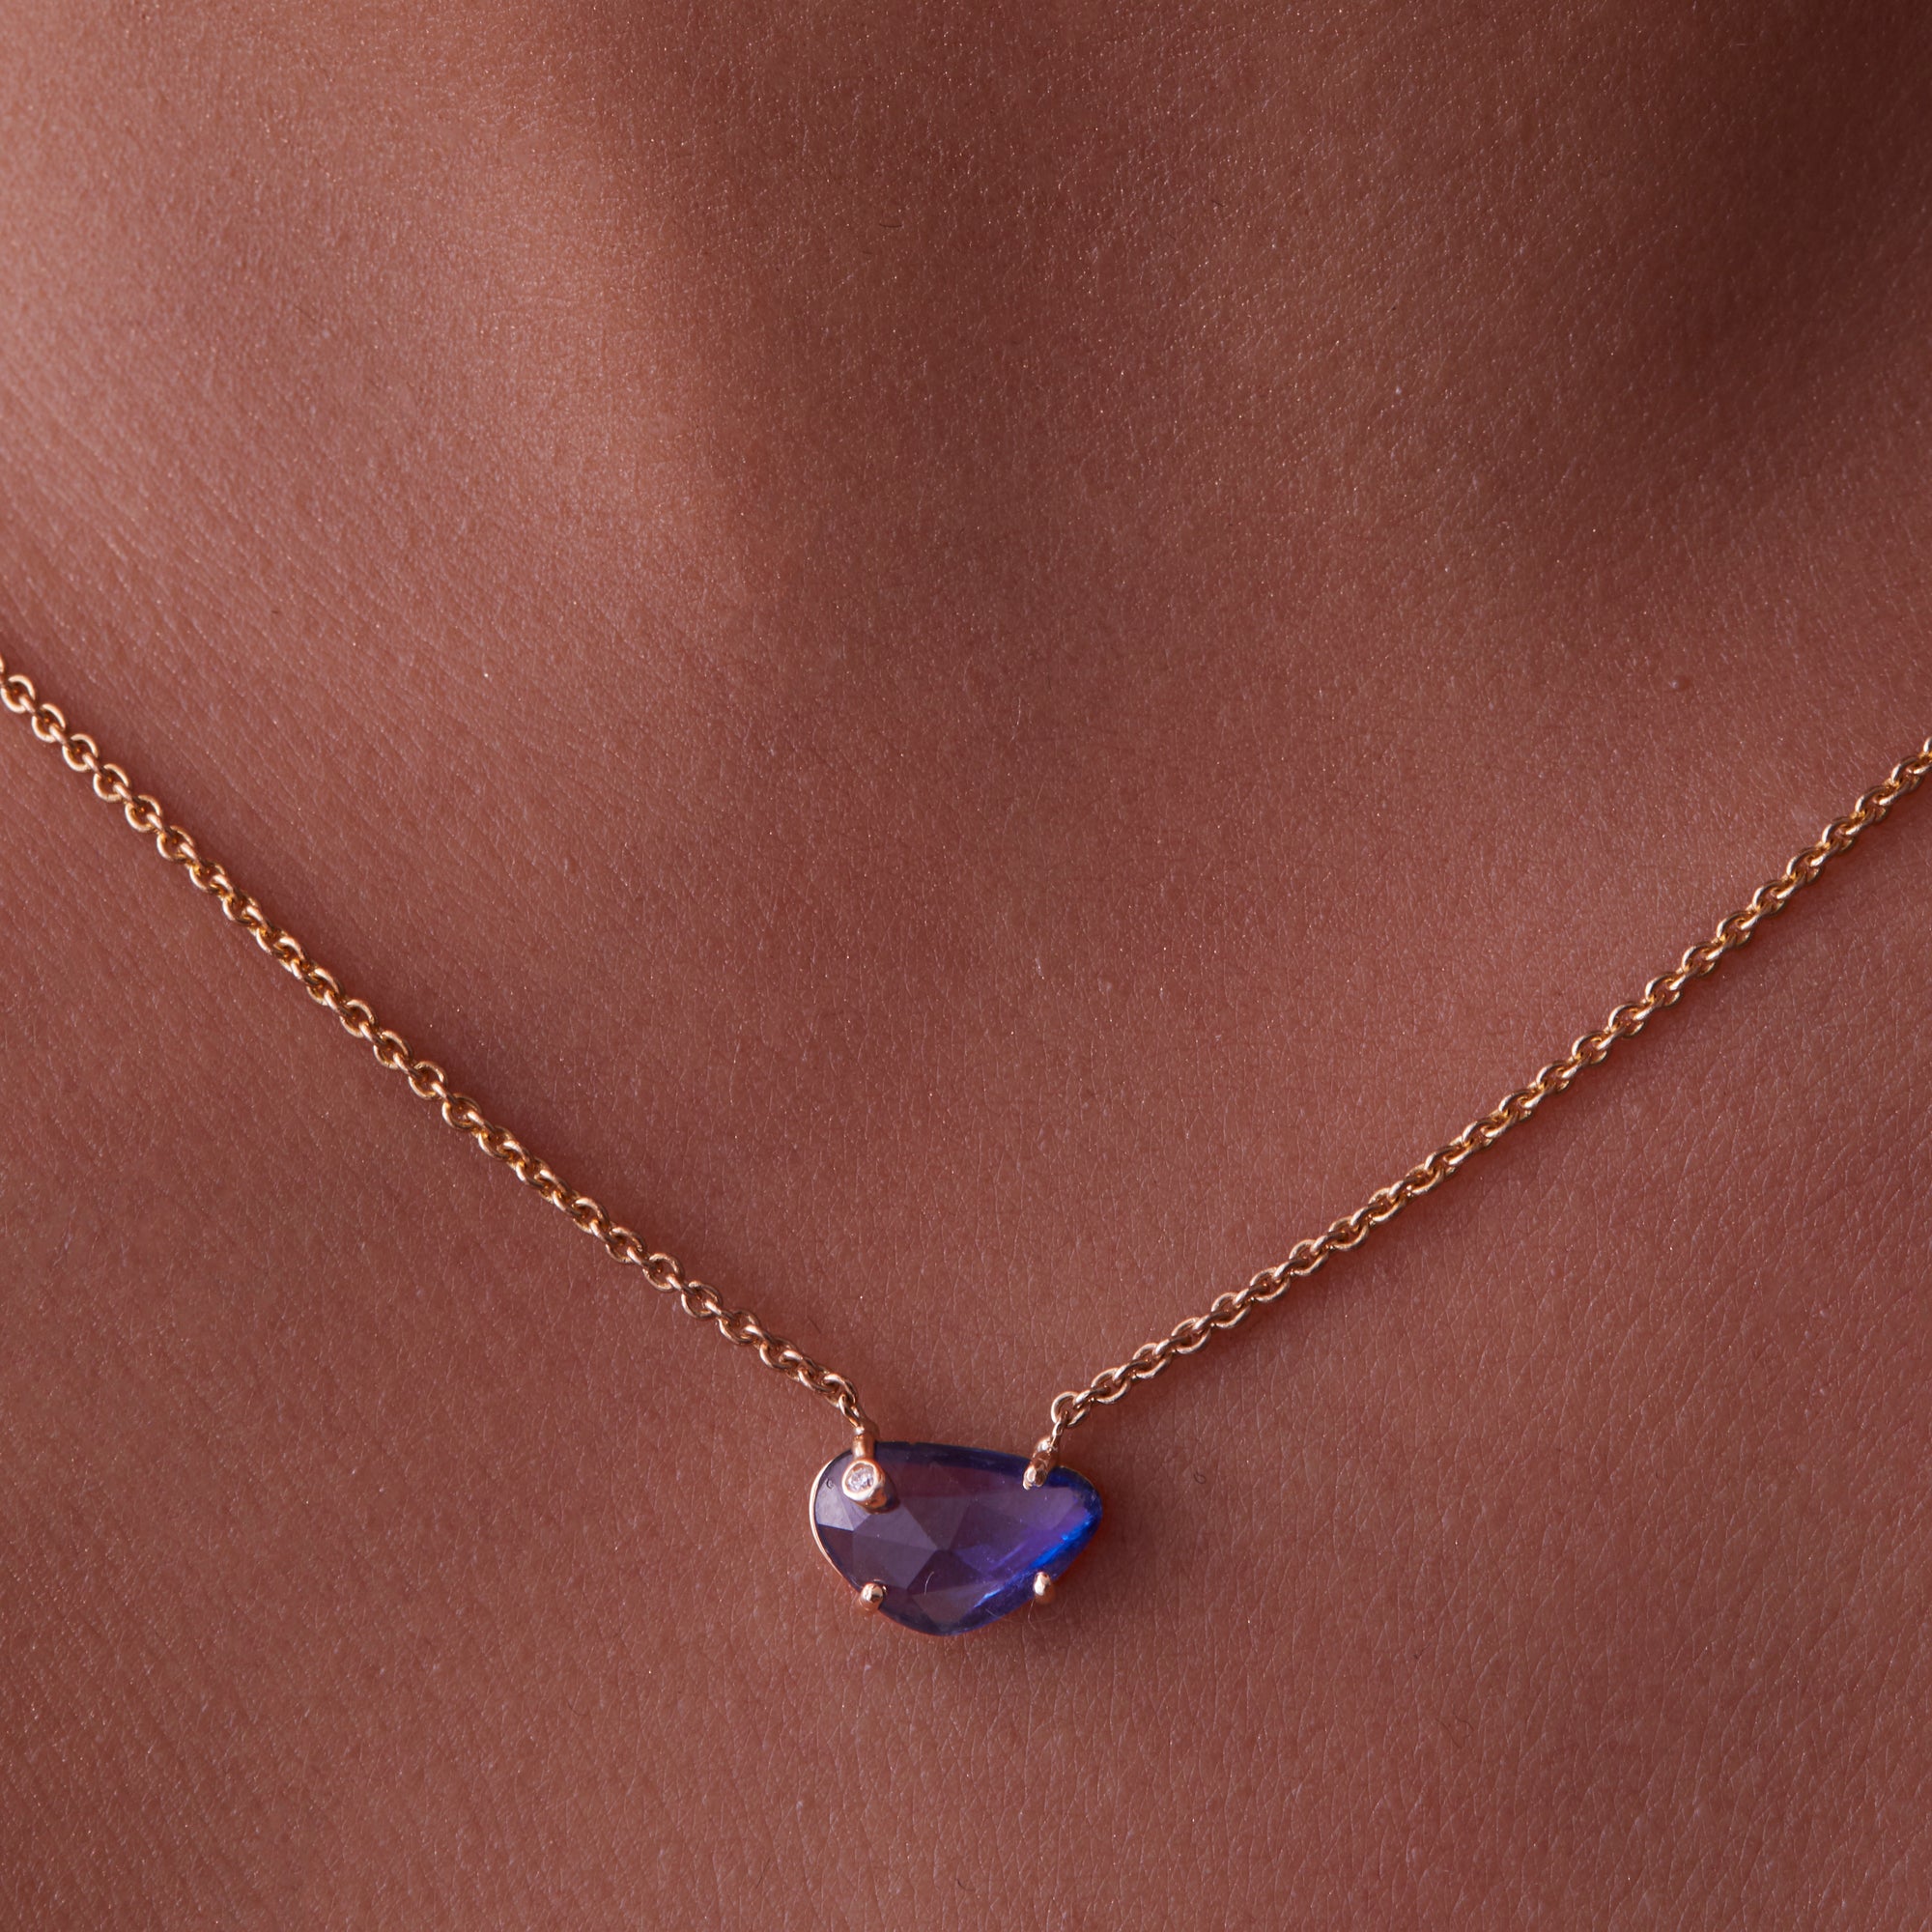 1 Carat Blue Sapphire Solitaire Pendant Necklace